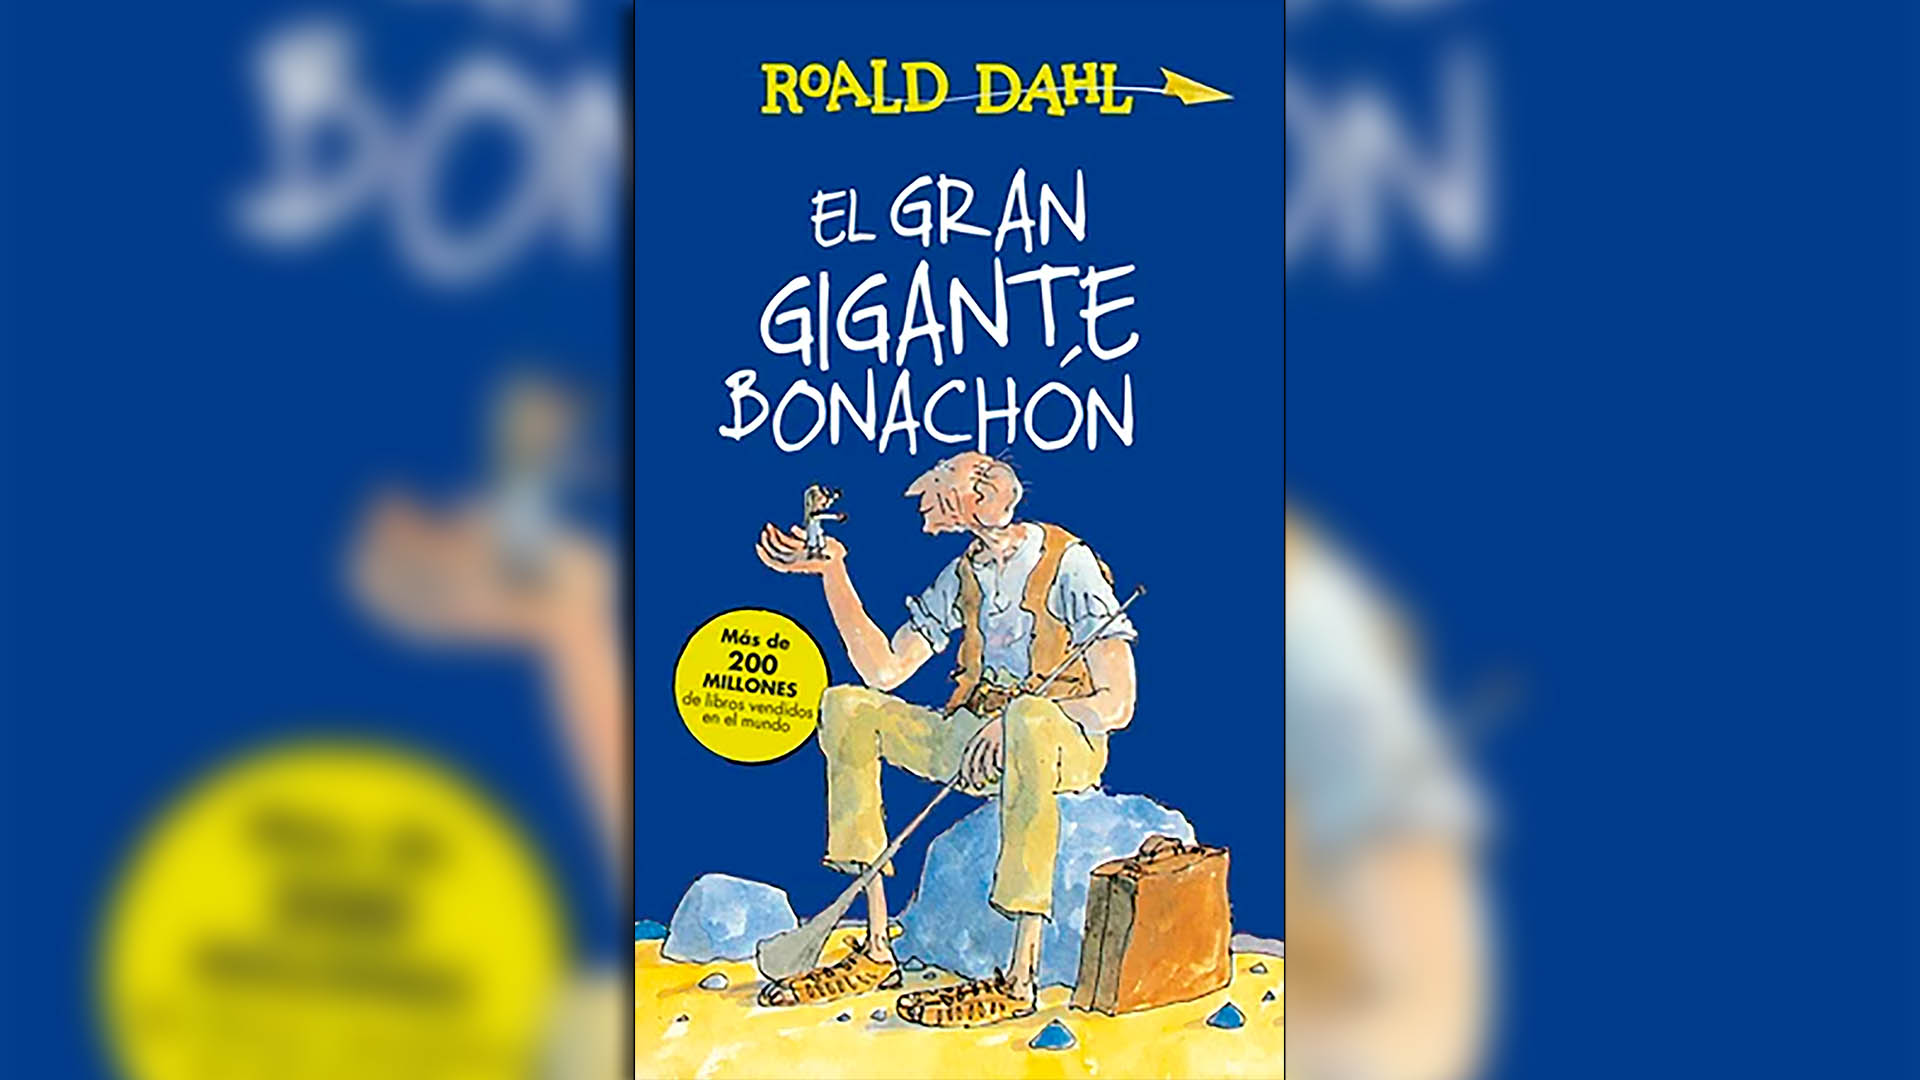 “El gran gigante bonachón”.